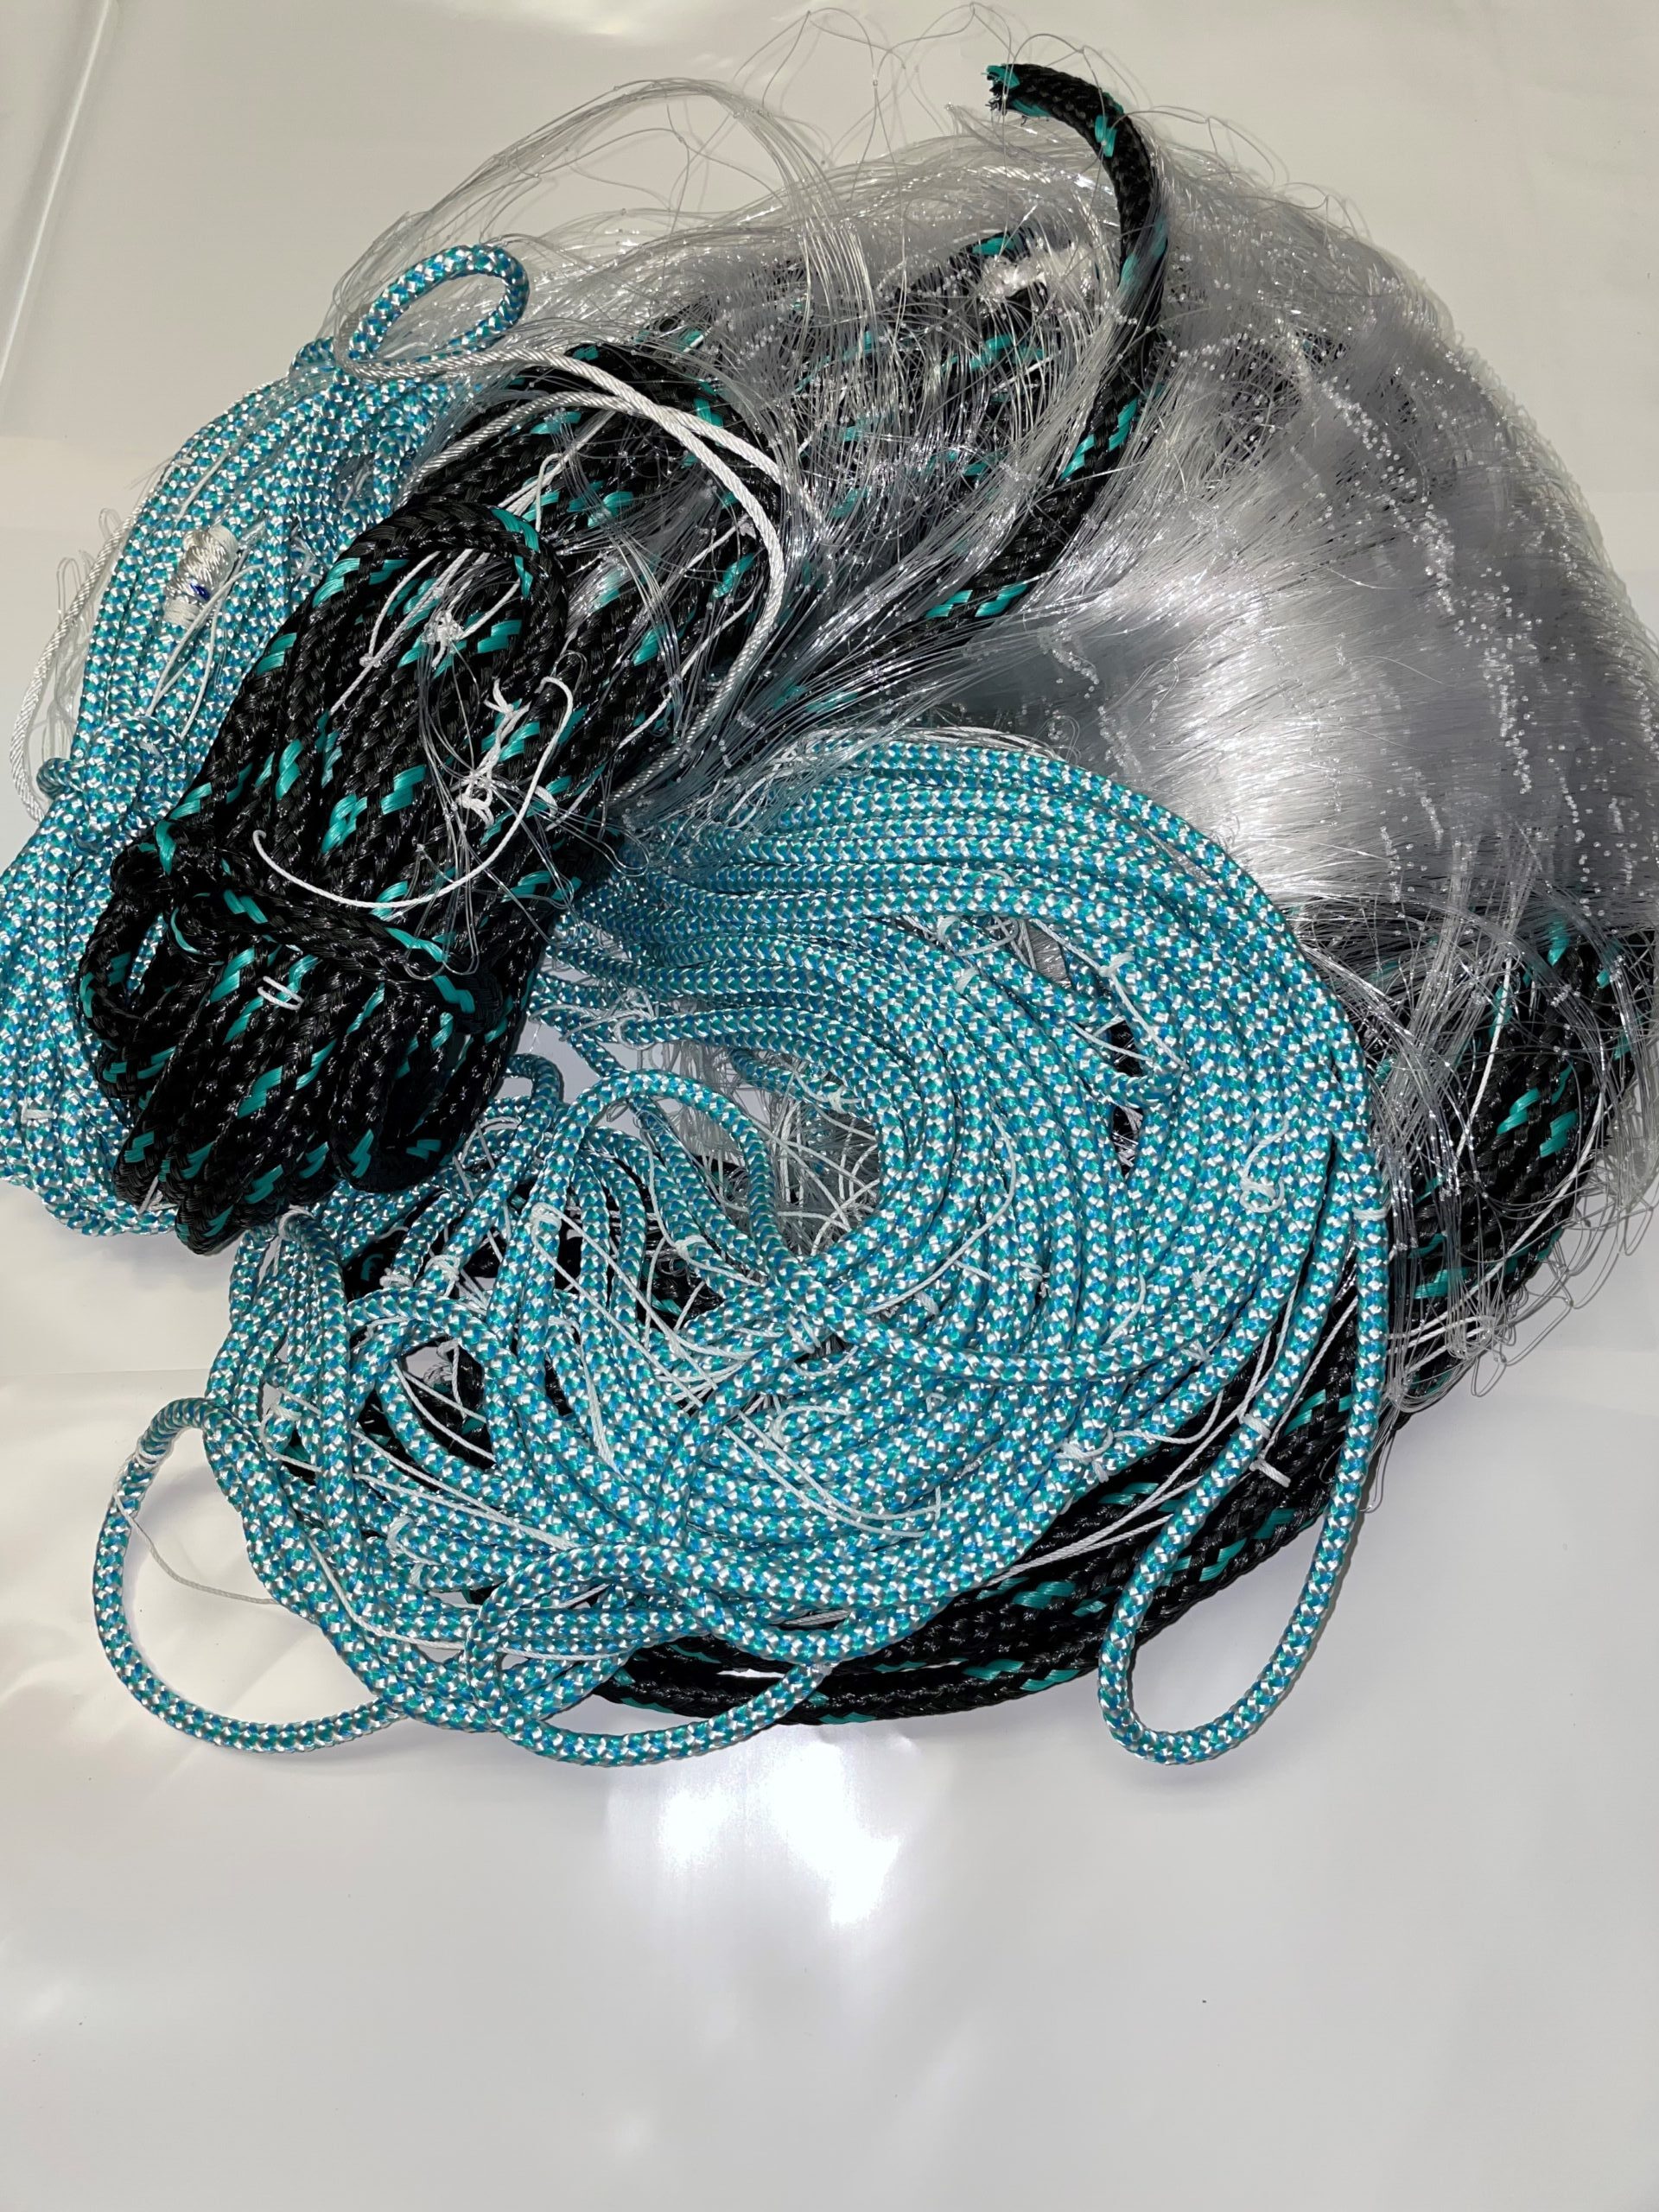 6'x200 Sheet Netting mono 0.25 mm fishing gill net making material